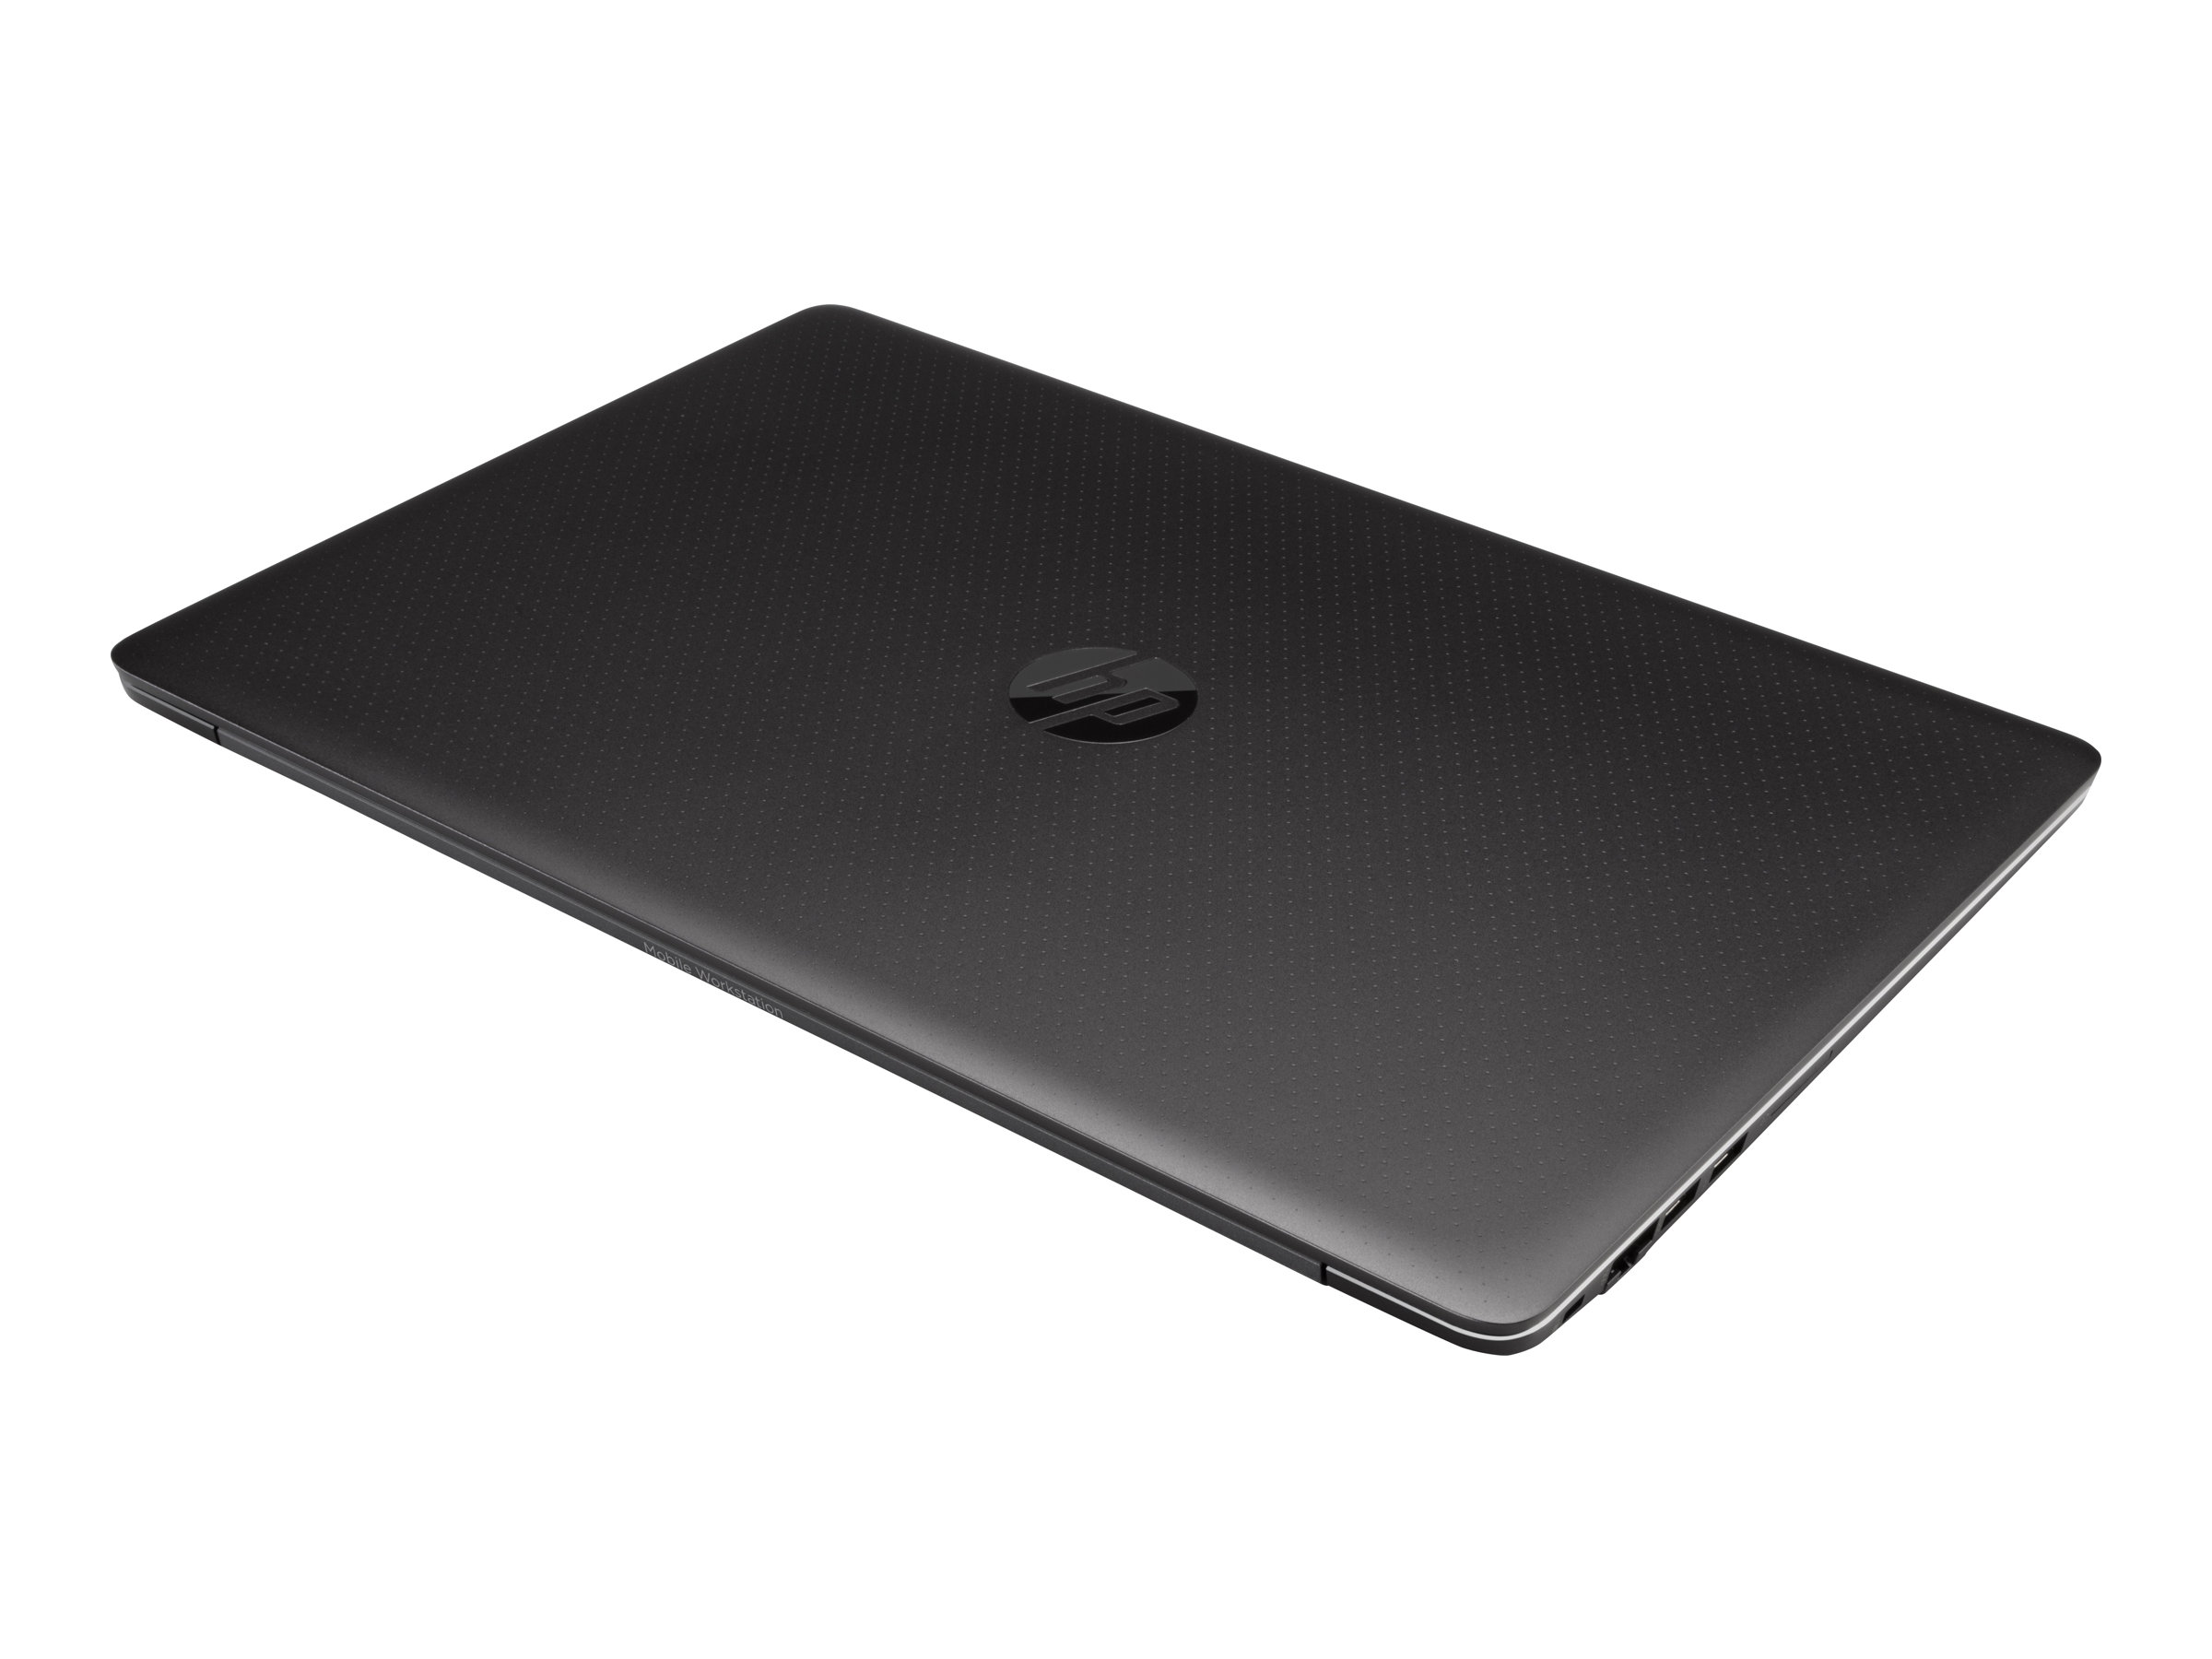 HP ZBook Studio G3 Xeon E3 16GB Win10pro